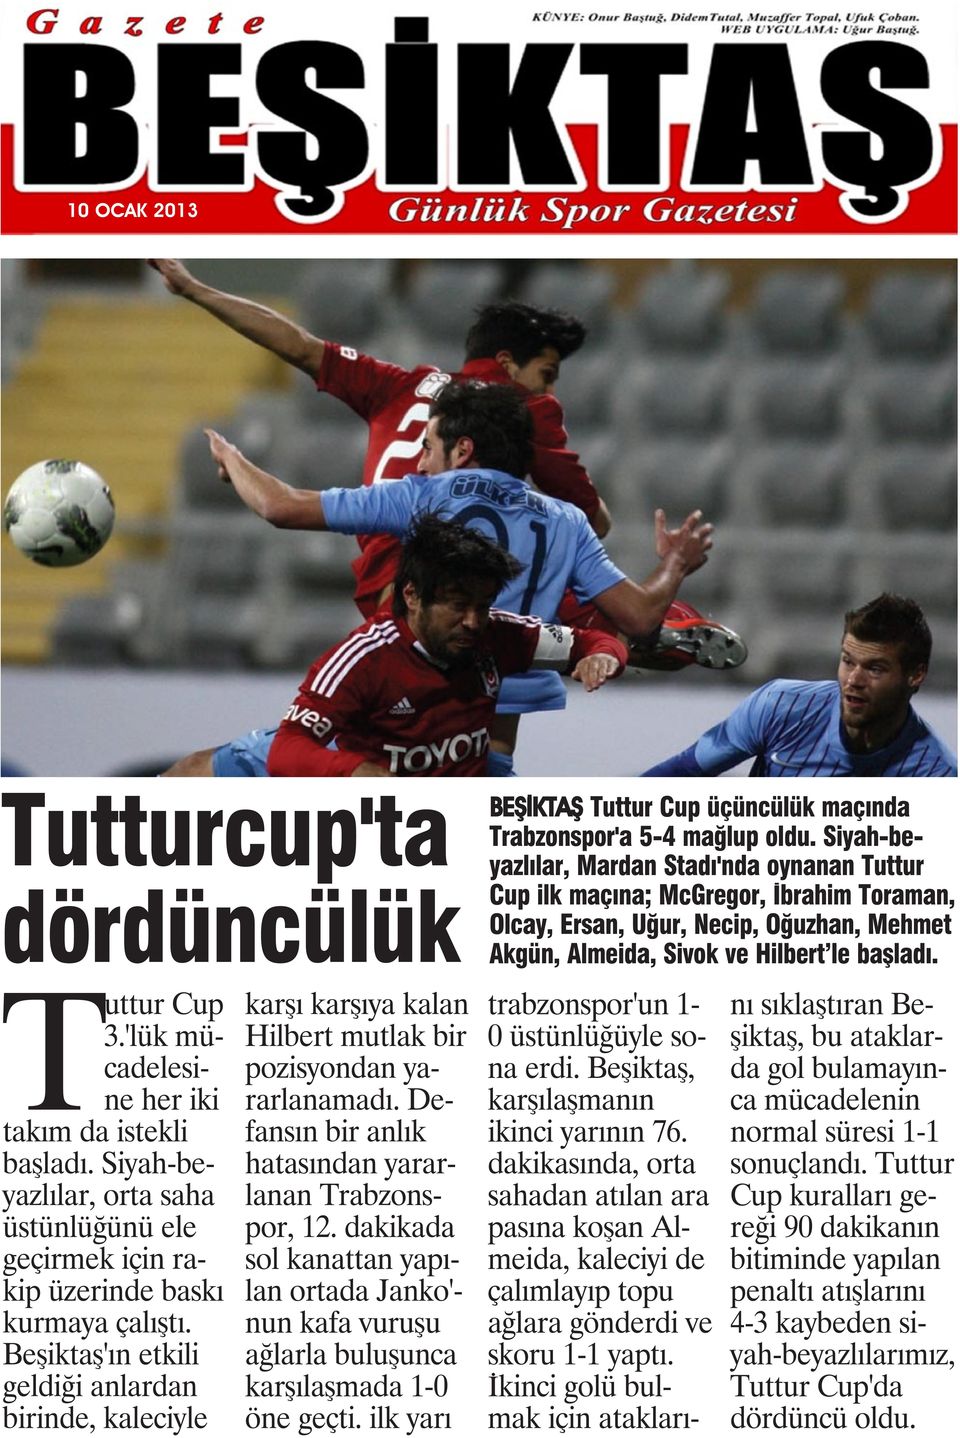 dakikada sol kanattan yapılan ortada Janko'- nun kafa vuruşu ağlarla buluşunca karşılaşmada 1-0 öne geçti. ilk yarı BEŞİKTAŞ Tuttur Cup üçüncülük maçında Trabzonspor'a 5-4 mağlup oldu.